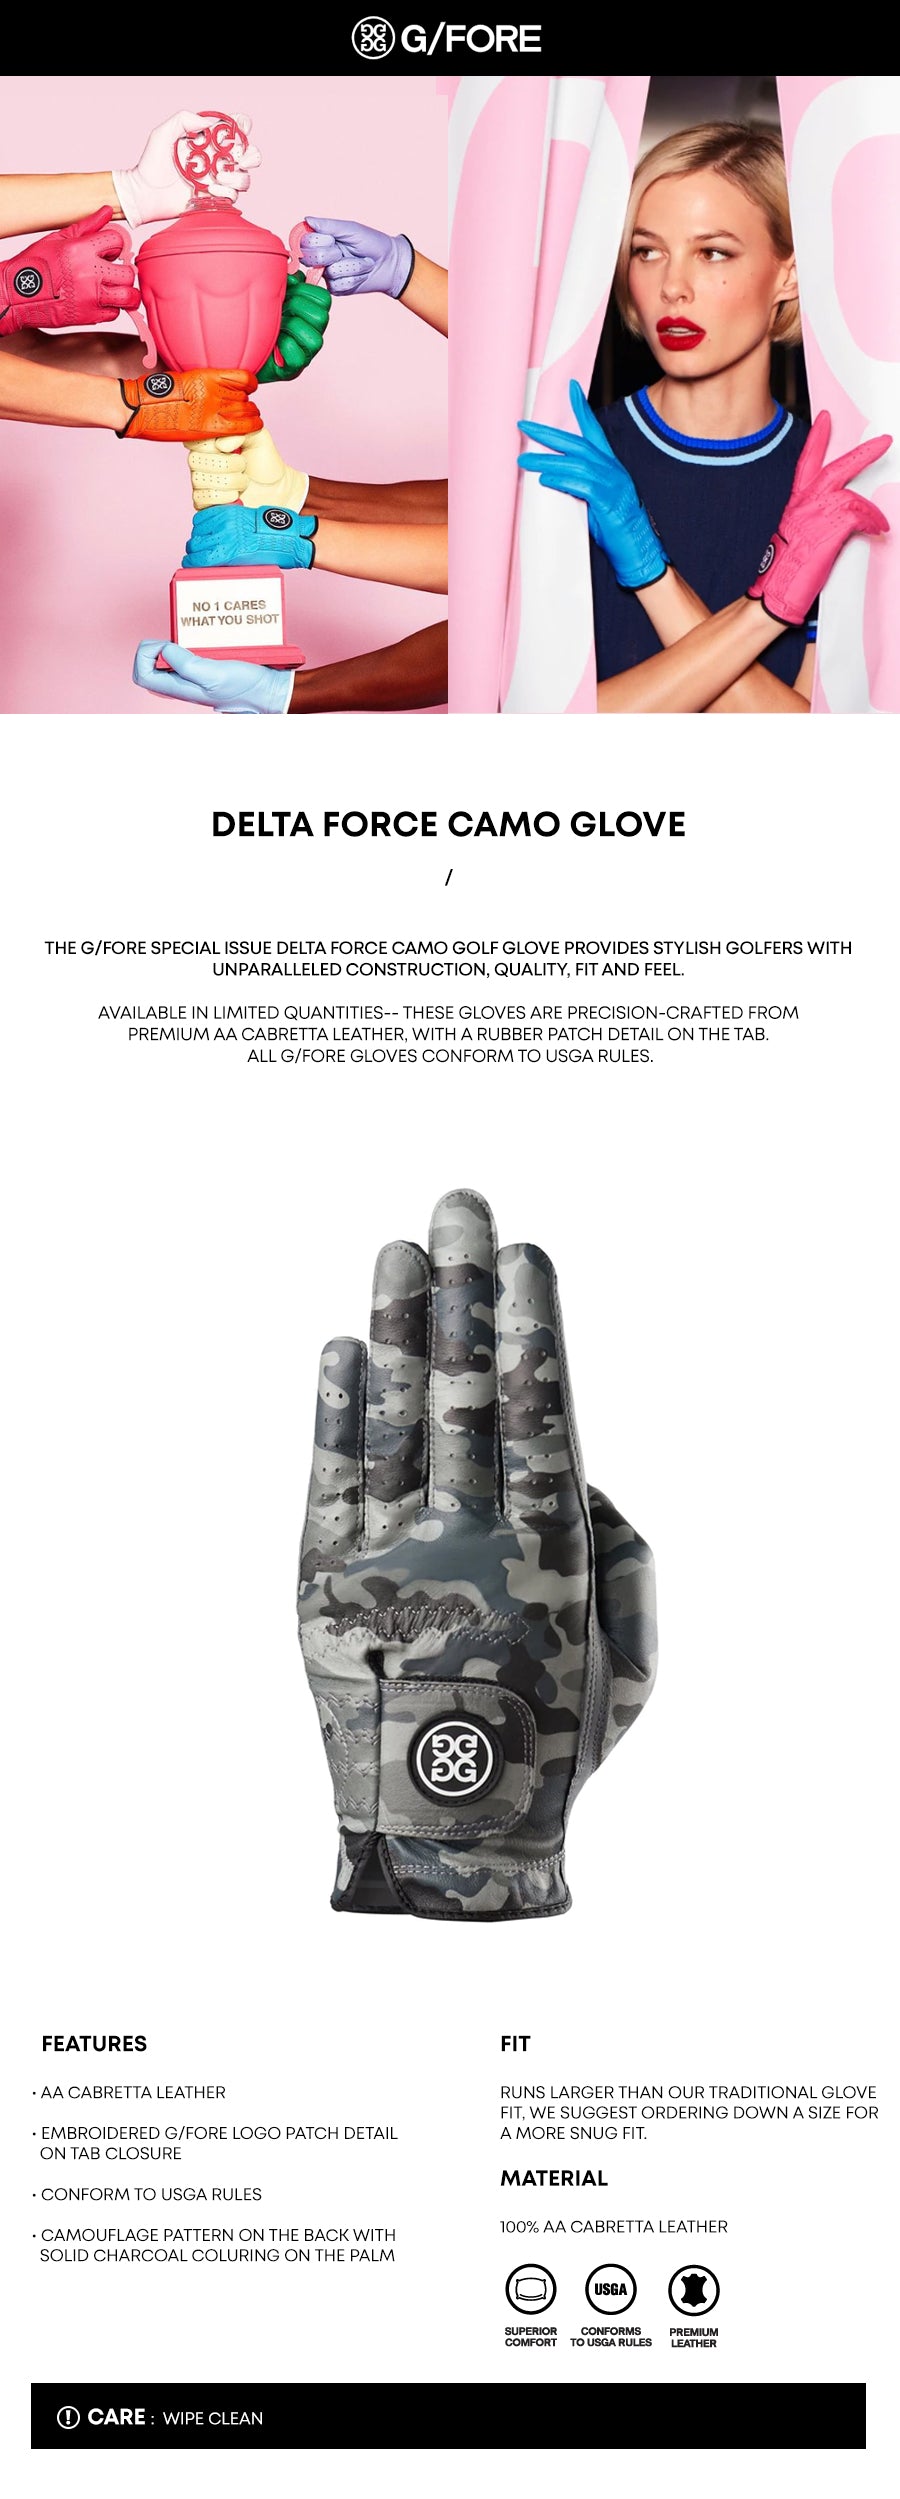 gfore-delta-force-camo-glove